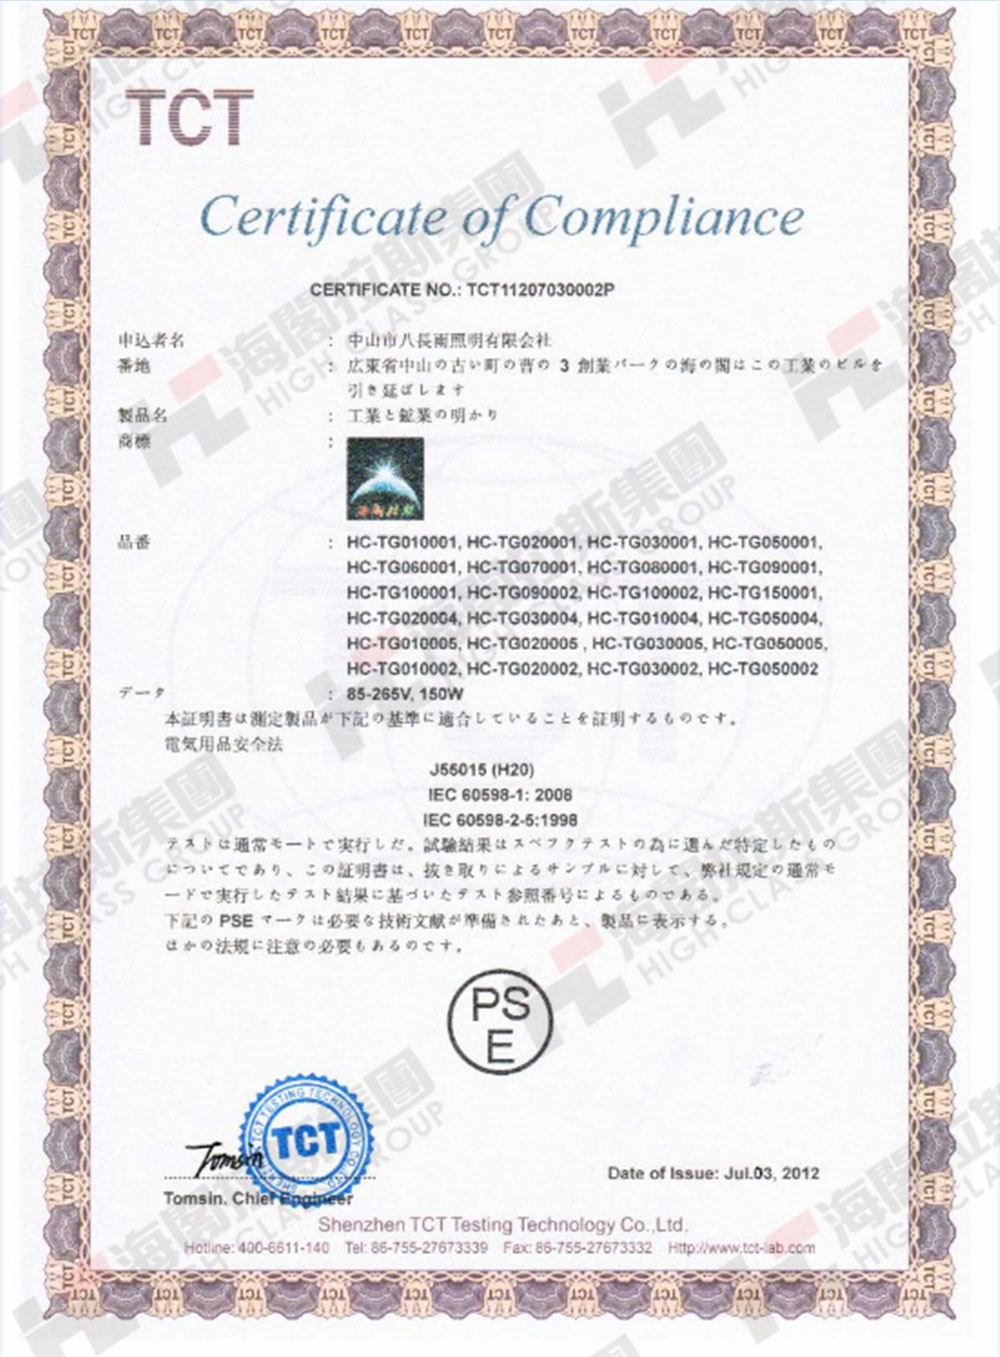 海阁拉斯产品认证证书4.jpg